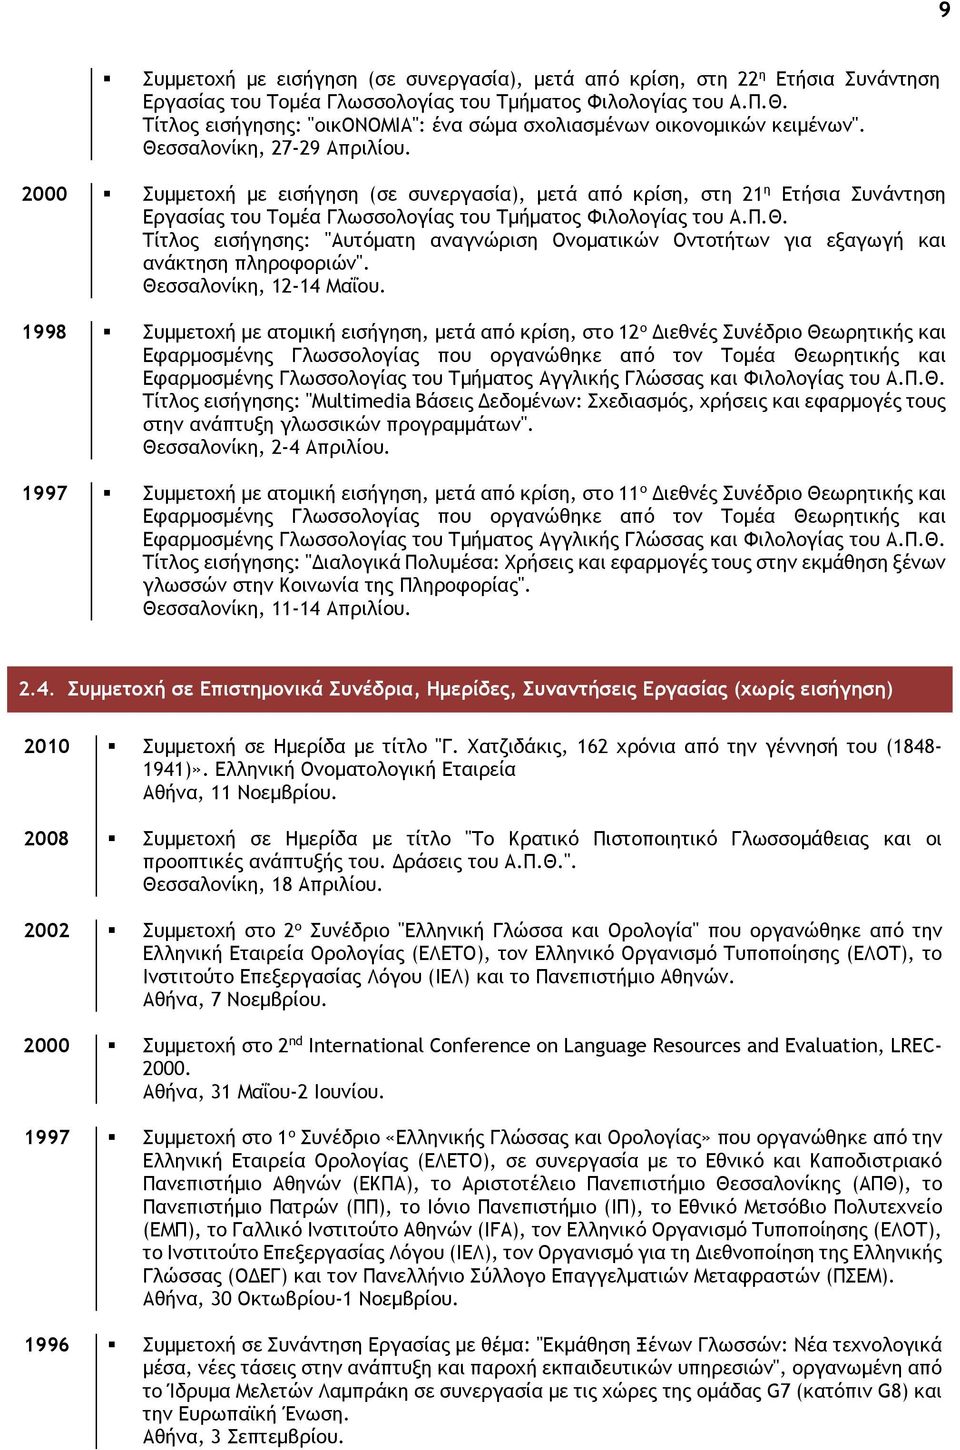 2000 Συμμετοχή με εισήγηση (σε συνεργασία), μετά από κρίση, στη 21 η Ετήσια Συνάντηση Εργασίας του Τομέα Γλωσσολογίας του Τμήματος Φιλολογίας του Α.Π.Θ.